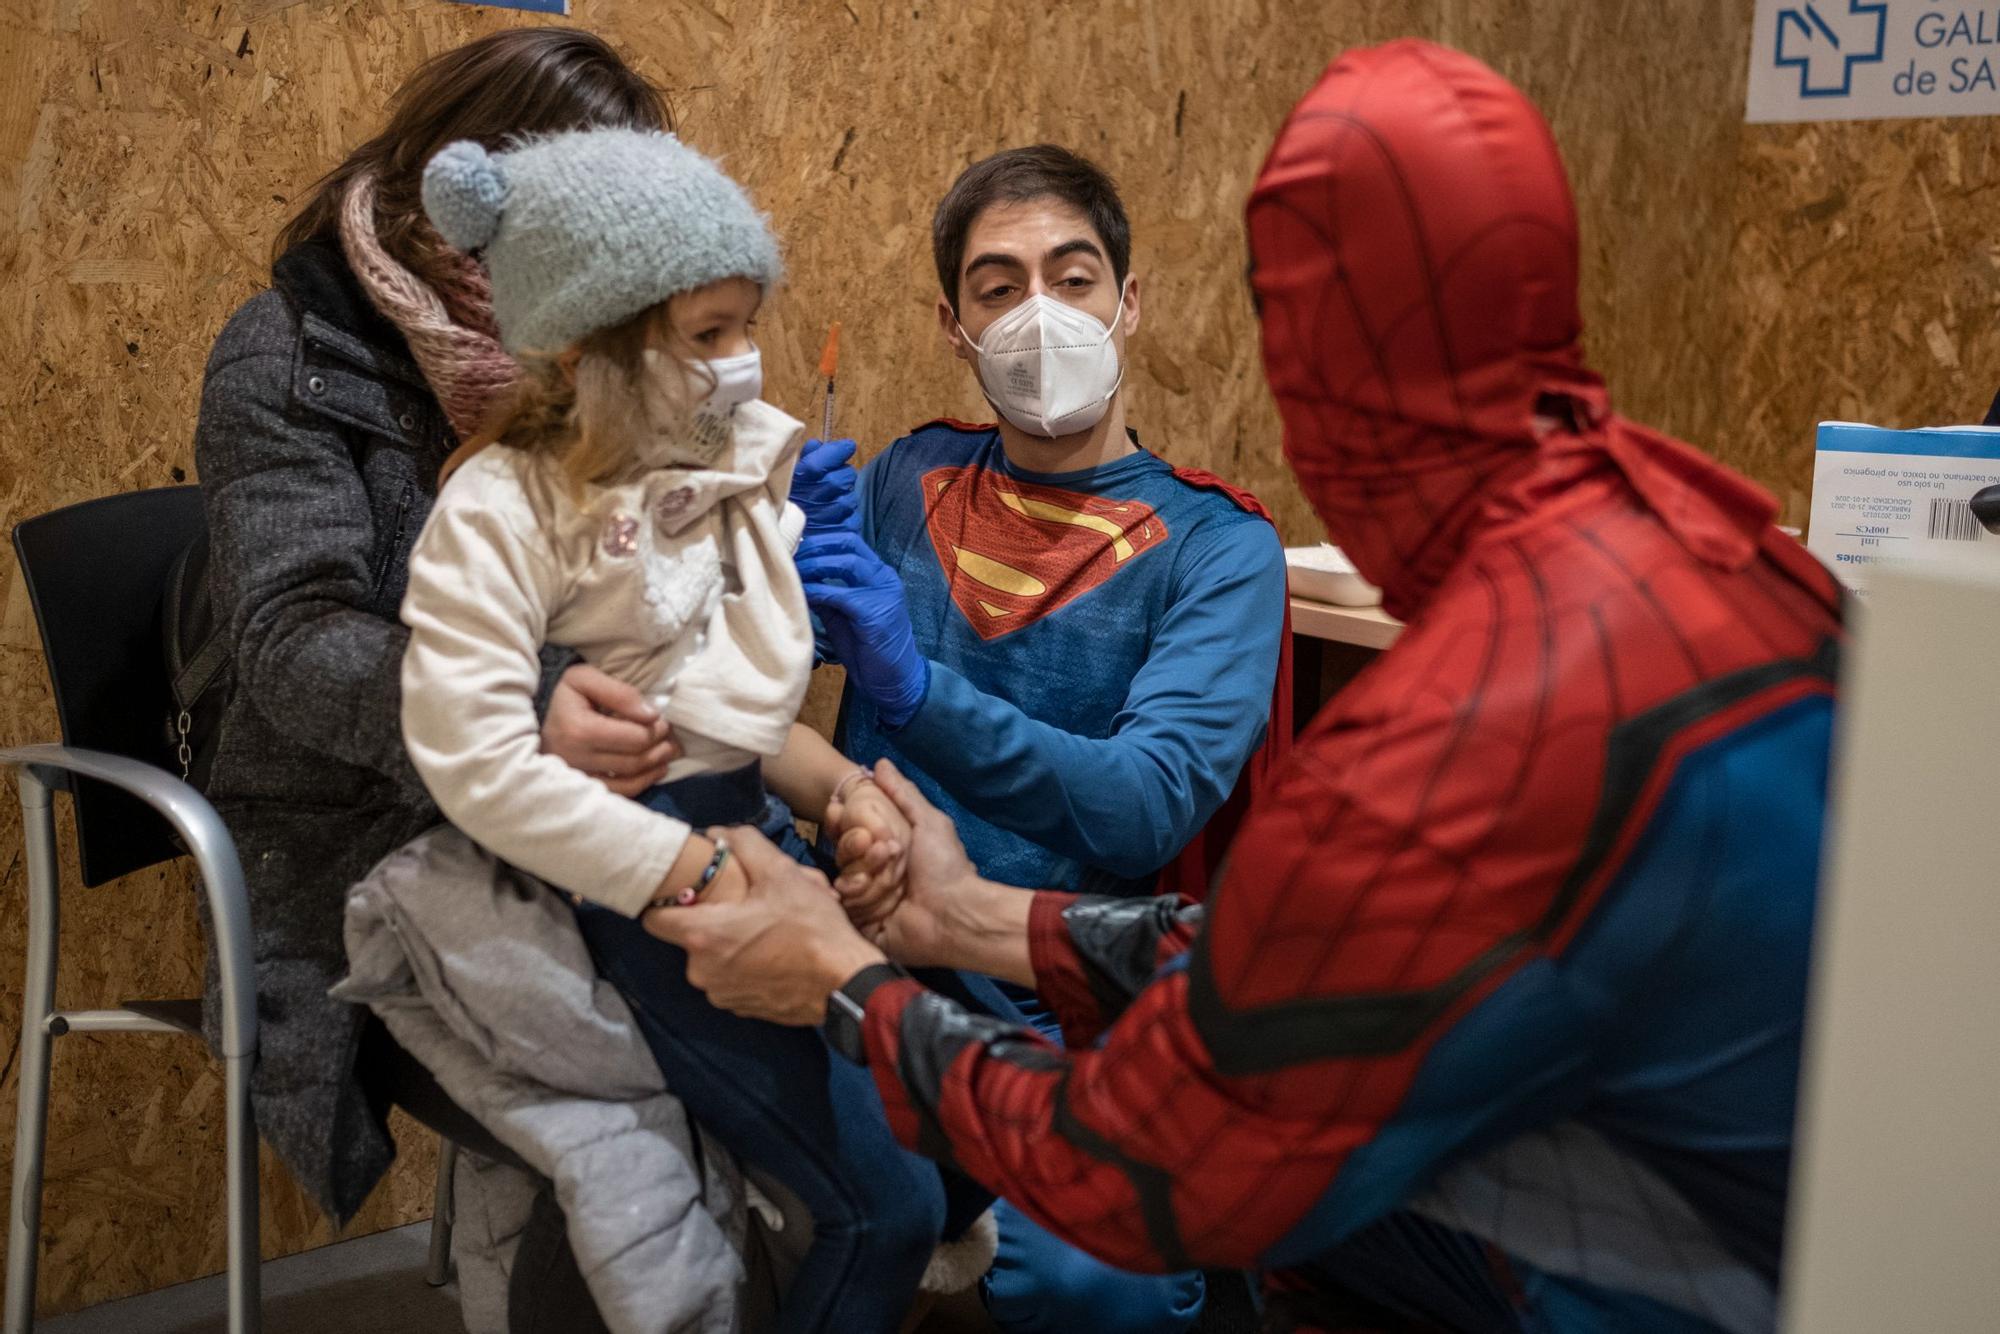 Los superhéroes cumplen su 'misión vacuna' en Ourense